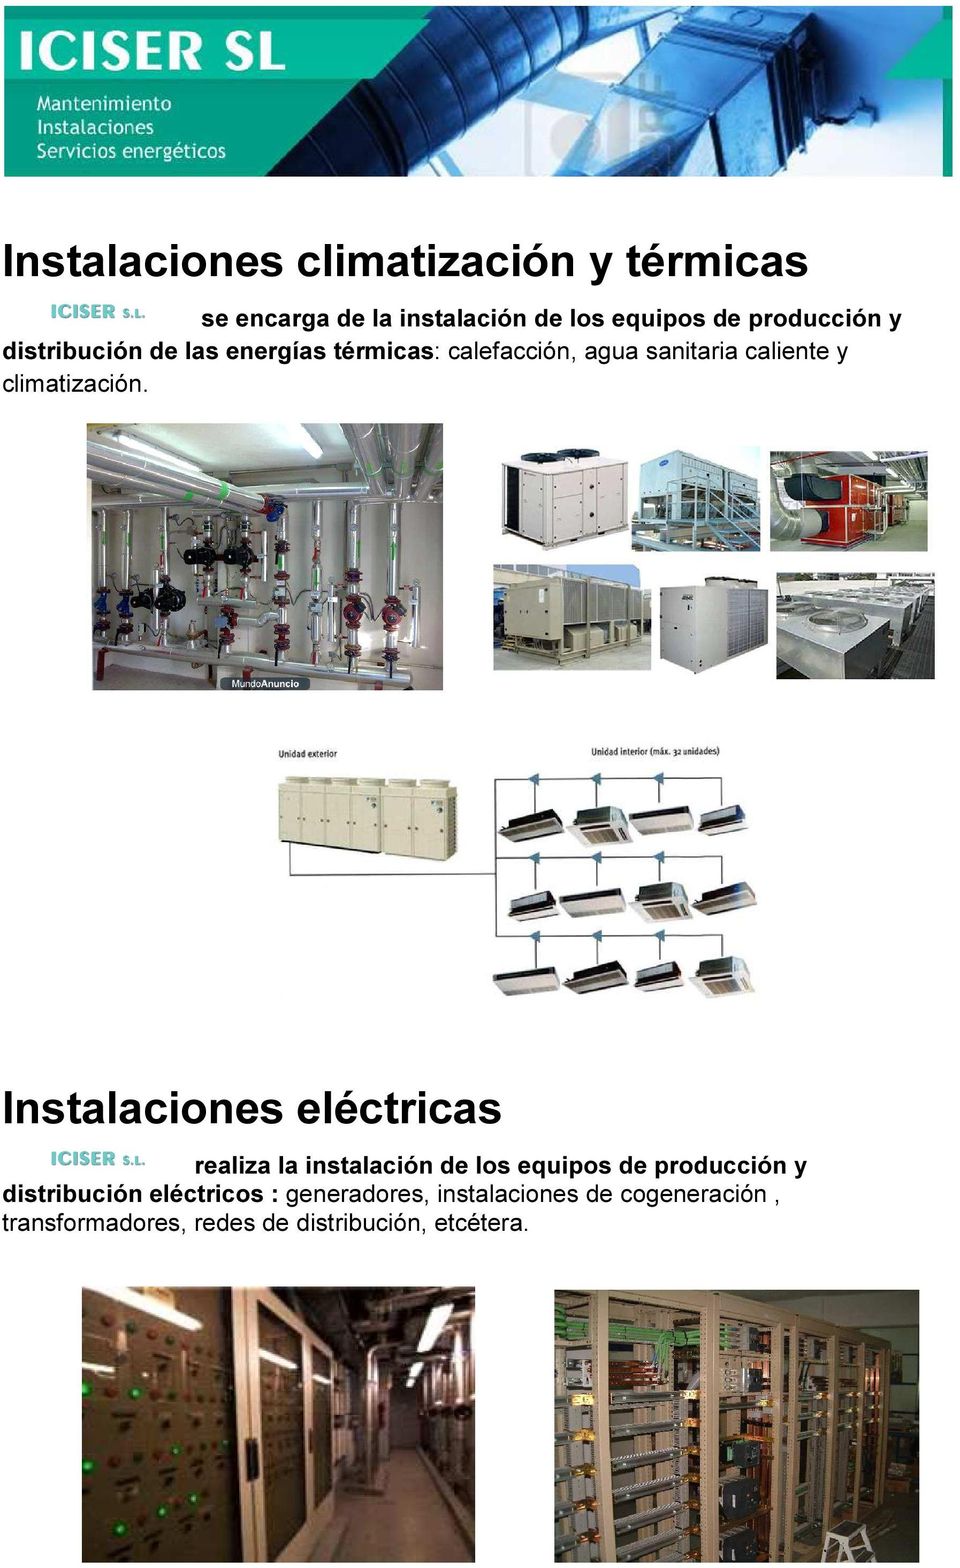 Instalaciones eléctricas realiza la instalación de los equipos de producción y distribución